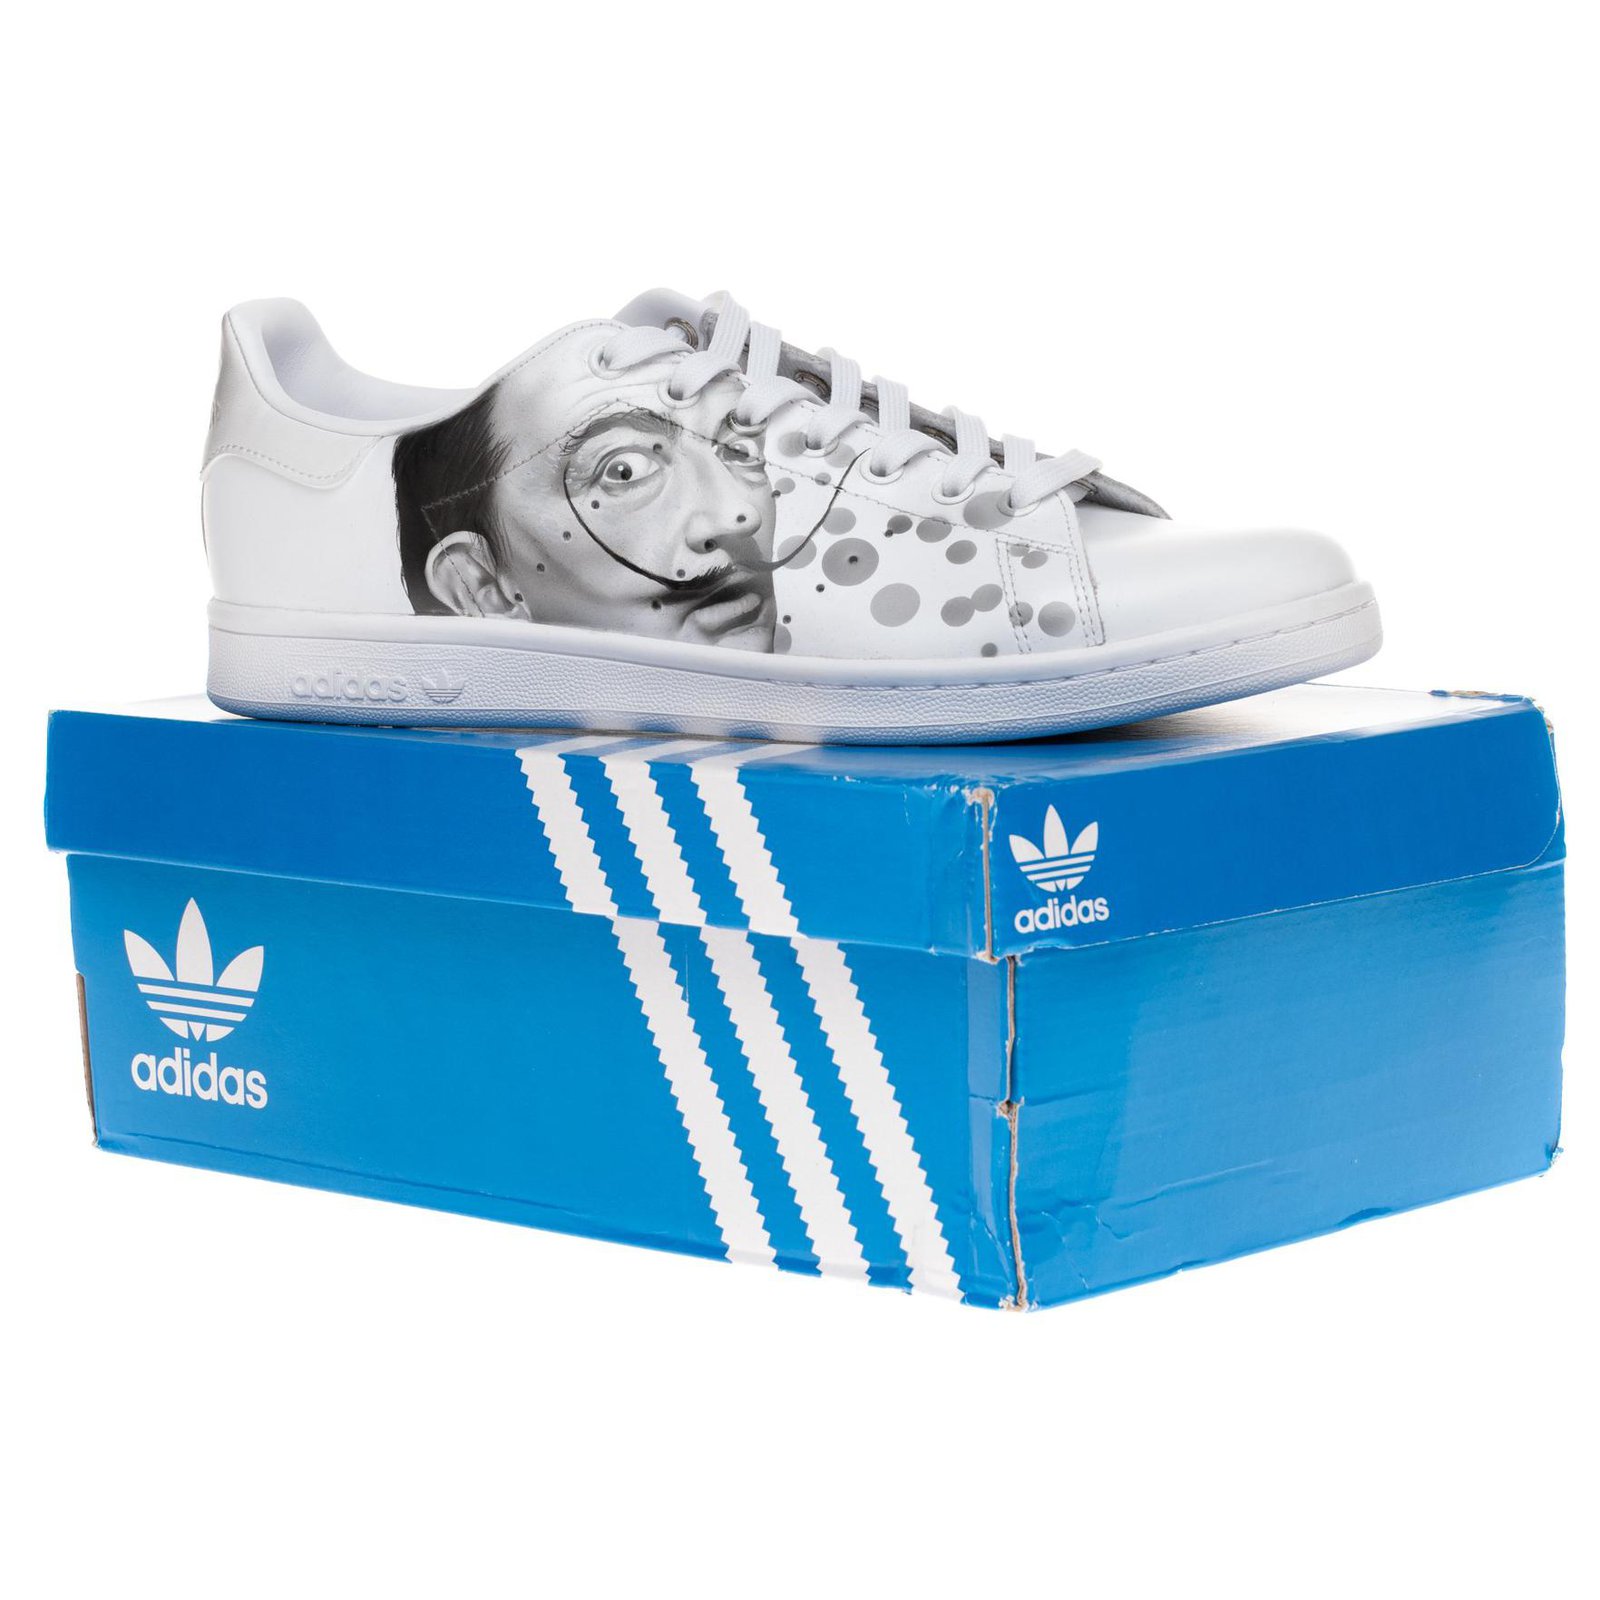 Adidas Stan Smith Zapatillas de deporte "Dali" totalmente blancas personalizadas por PatBo, Nueva condición, 1/3 Blanco Cuero ref.162297 - Joli Closet